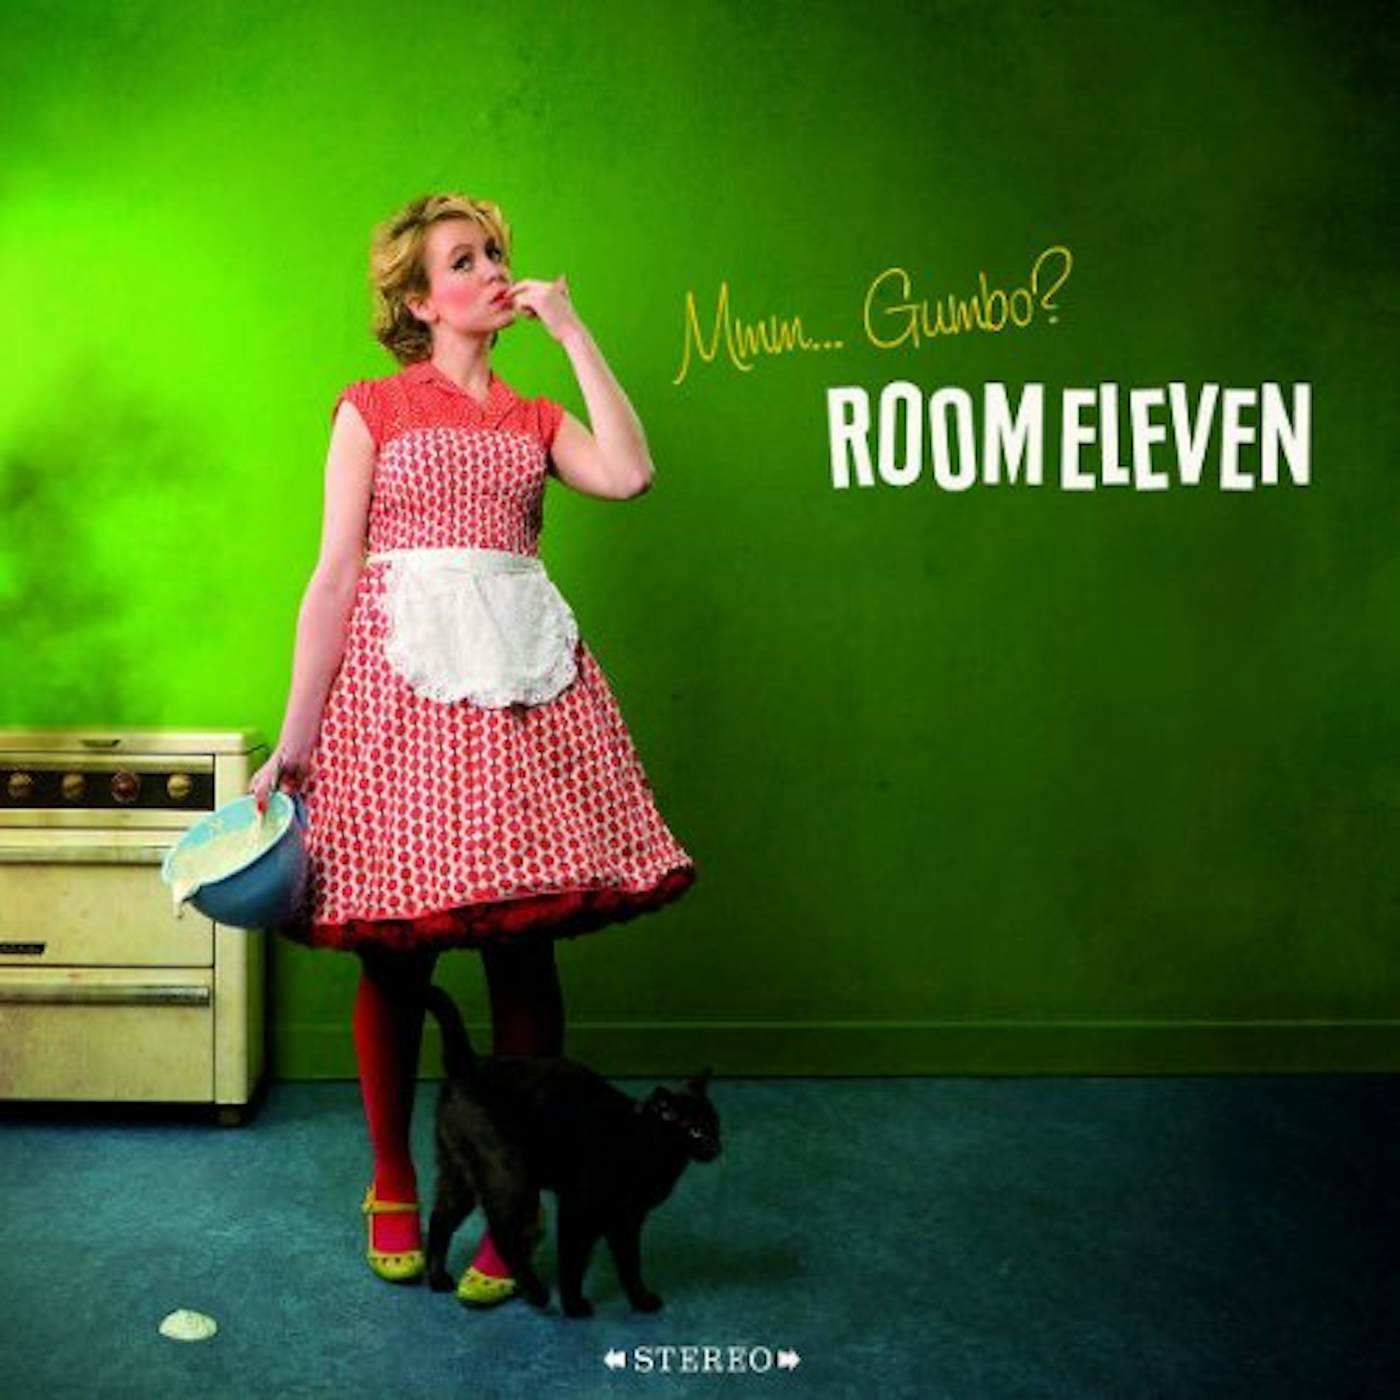 Room Eleven MMM GUMBO CD